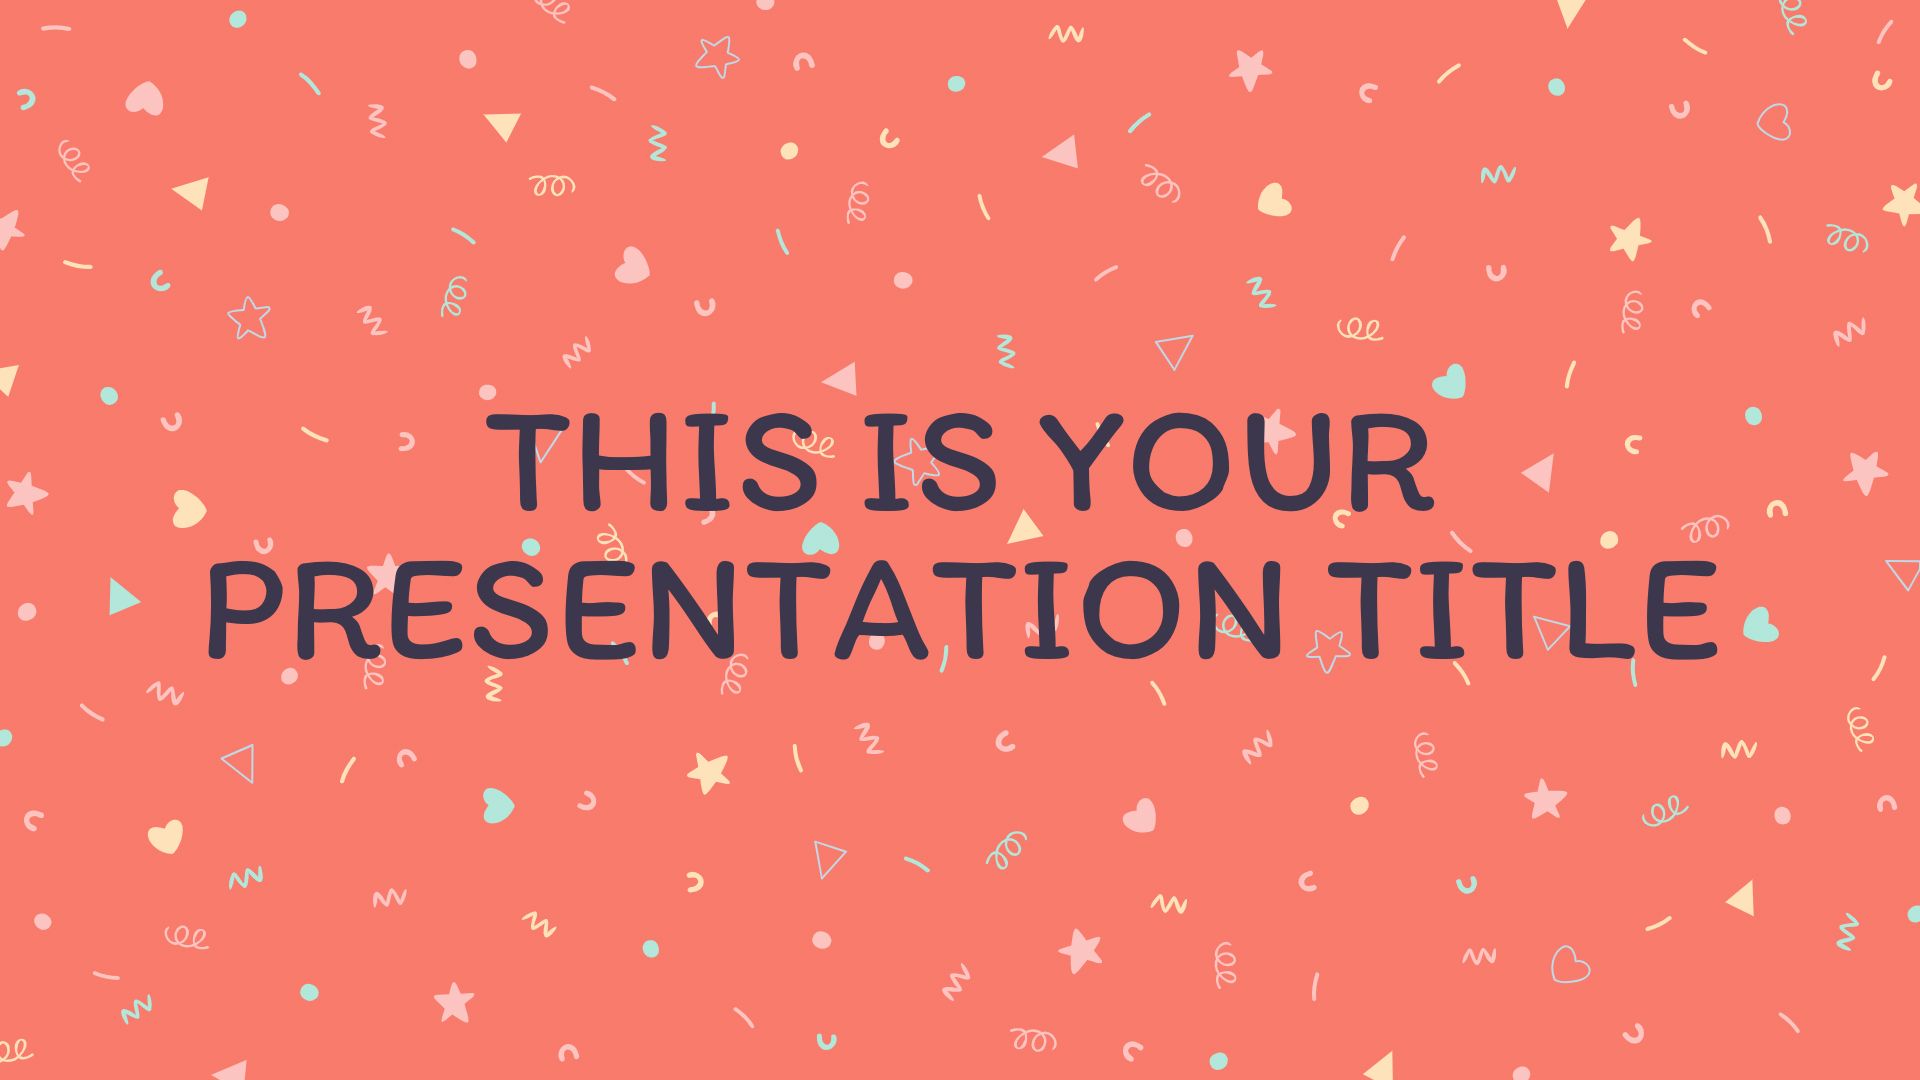 Tìm kiếm mẫu PowerPoint và Google Slides với họa tiết hạt giống dễ thương để mang lại sự tươi mới và độc đáo cho bài thuyết trình của bạn? Hãy khám phá bộ sưu tập miễn phí này với những hình nền đáng yêu và bắt mắt từ SlidesMania. Với sự kết hợp tinh tế giữa họa tiết và màu sắc, đảm bảo sẽ khiến cho bài thuyết trình của bạn trở nên sống động và thu hút hơn.